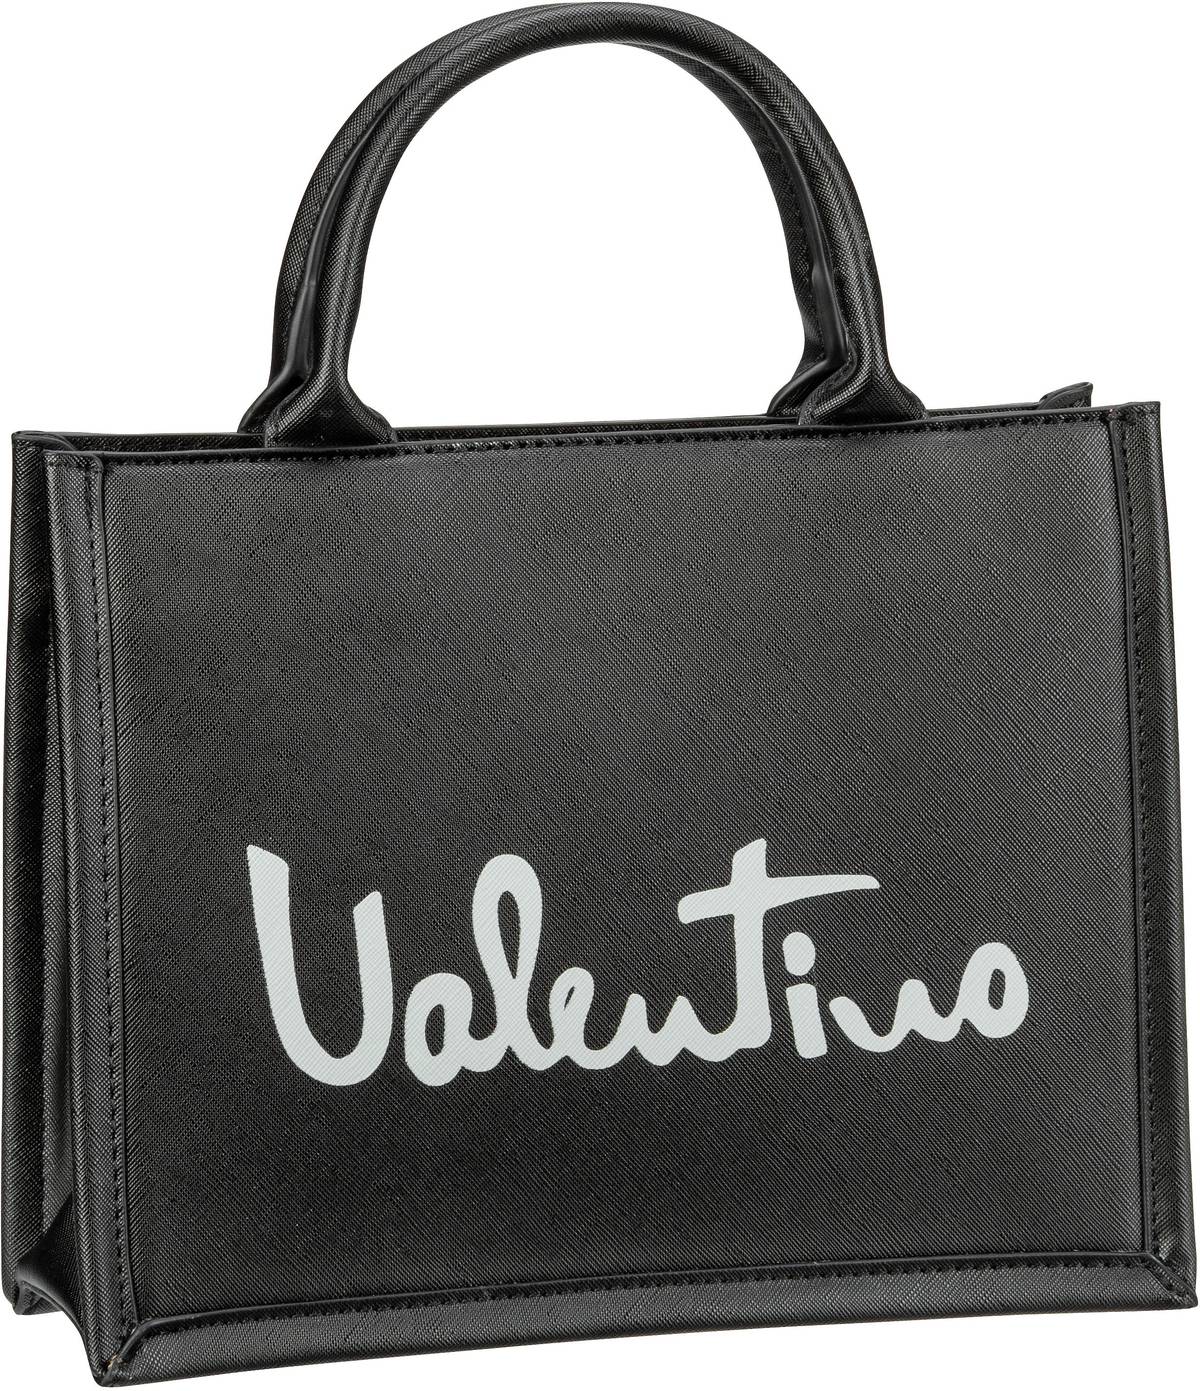 Valentino Shore Shopping A06 - Nero/Grigio